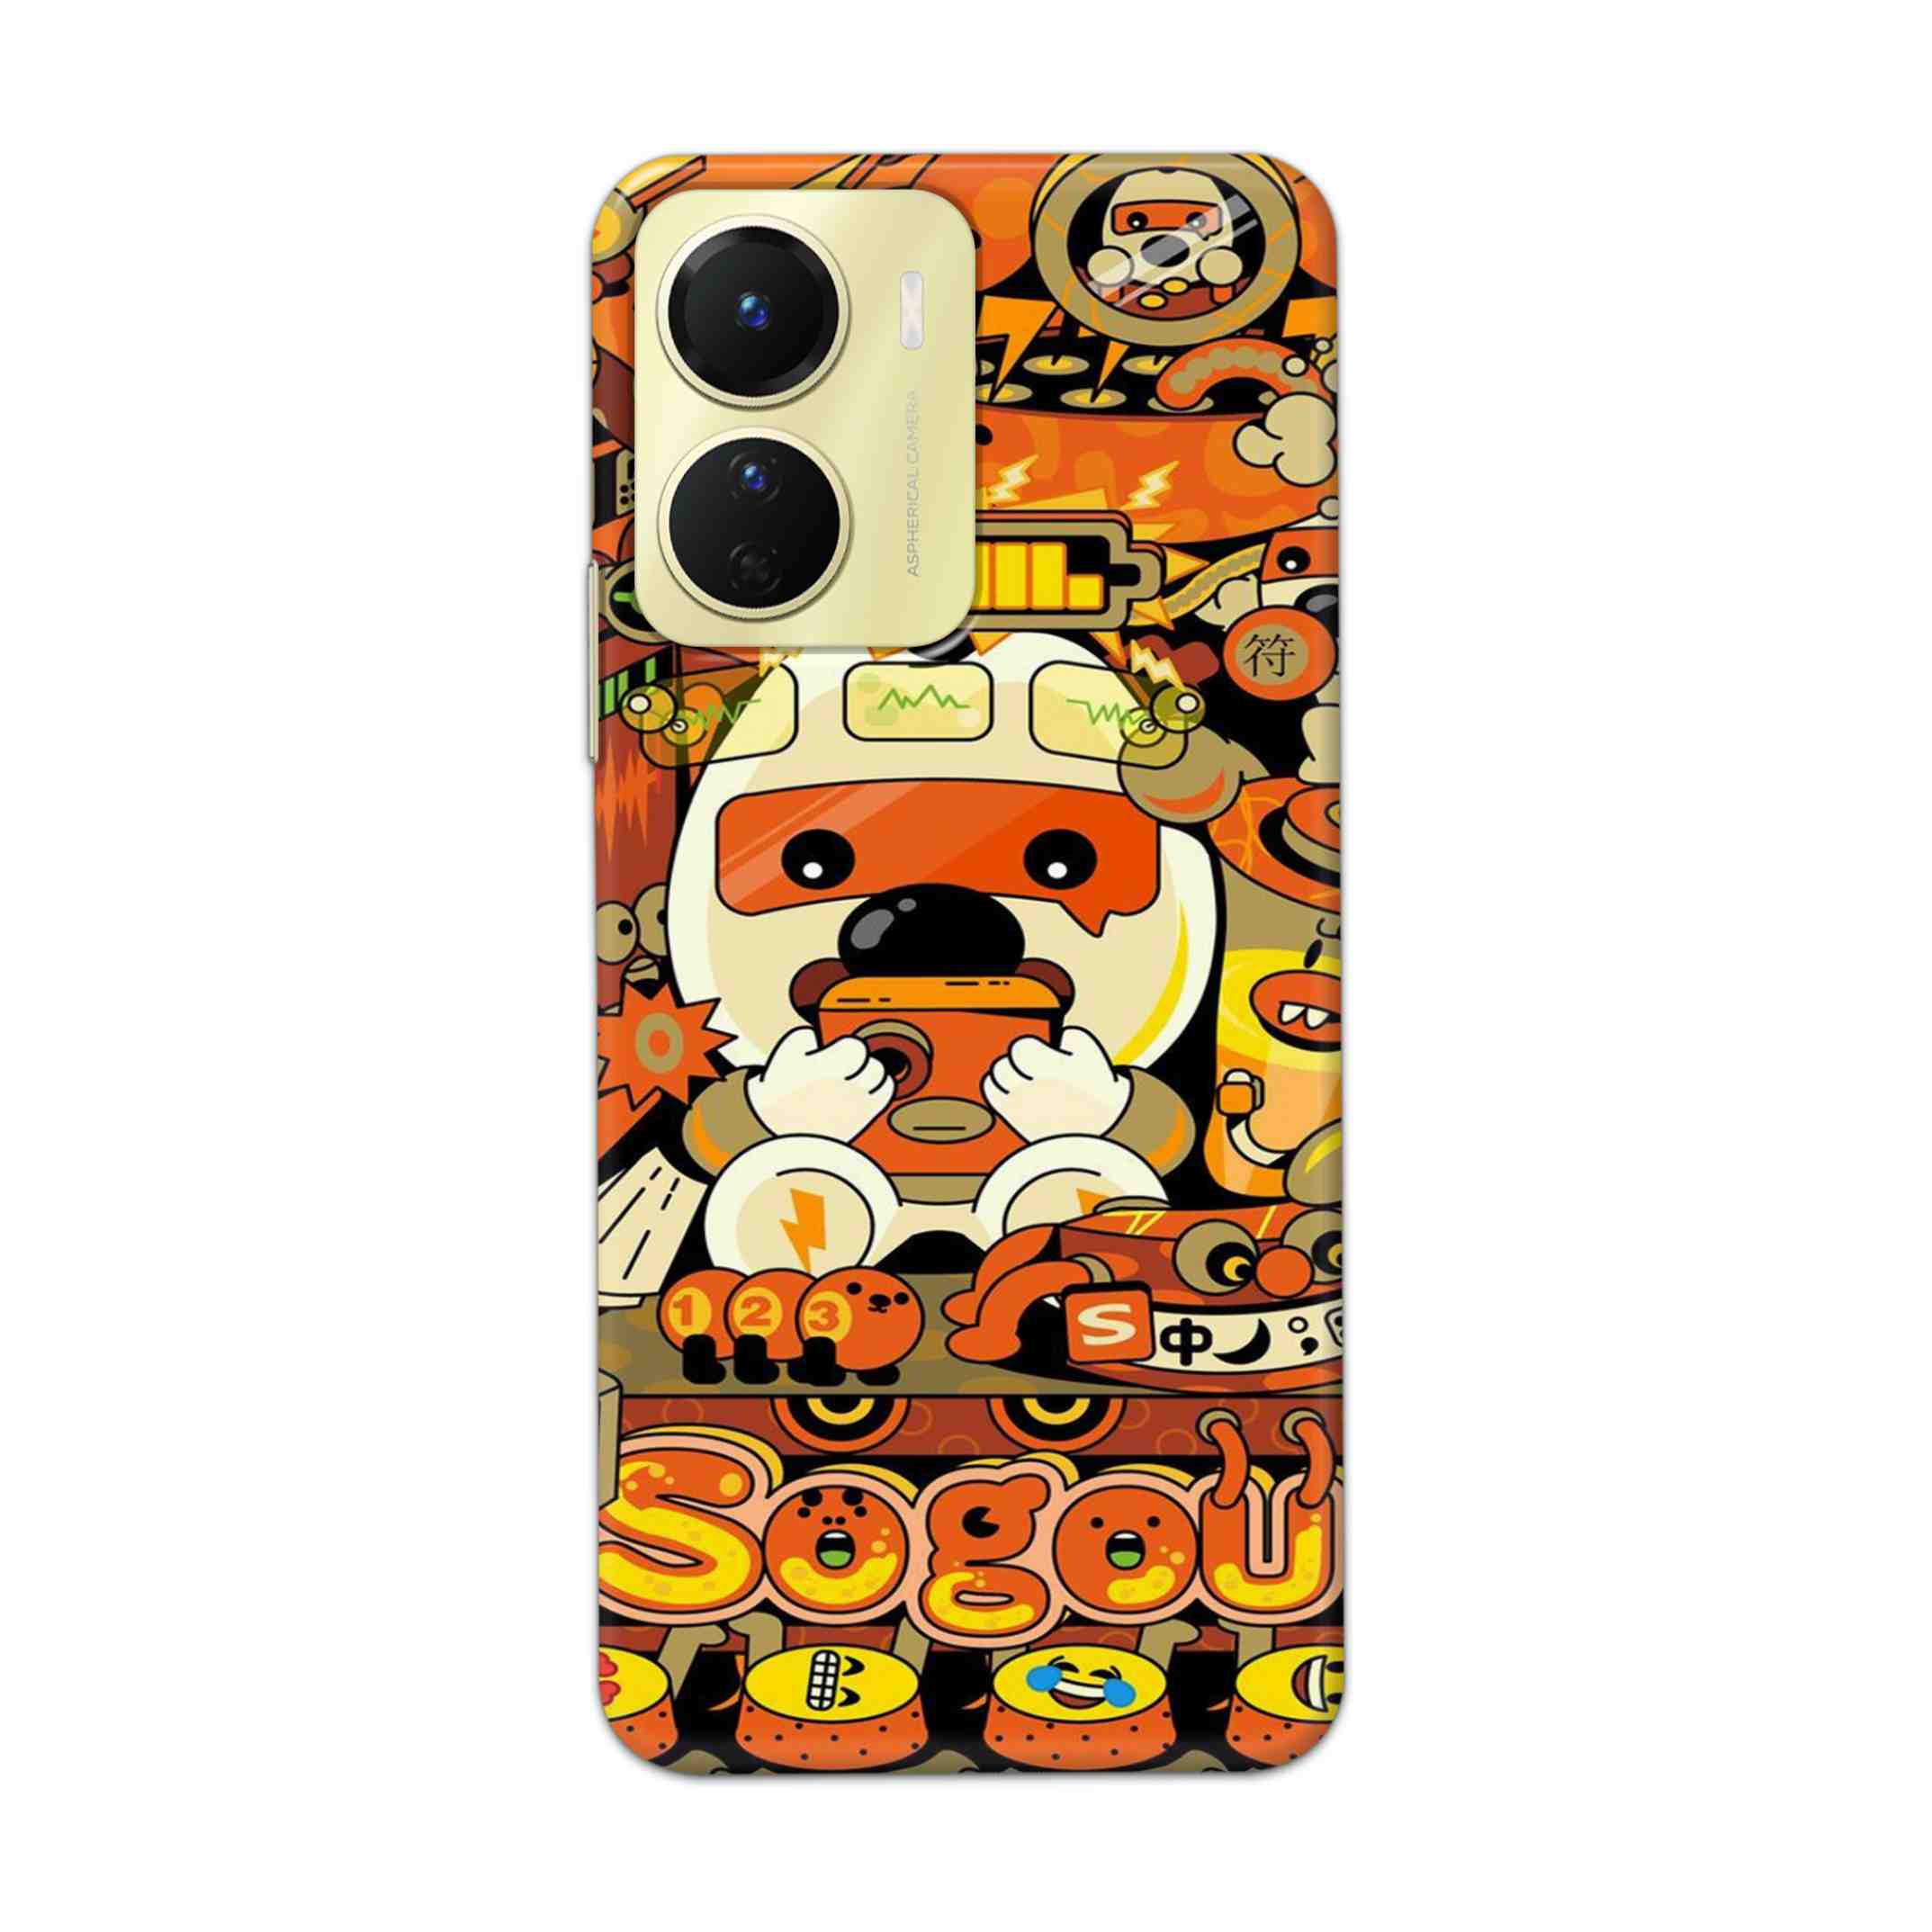 Buy Sogou Hard Back Mobile Phone Case Cover For Vivo Y16 Online